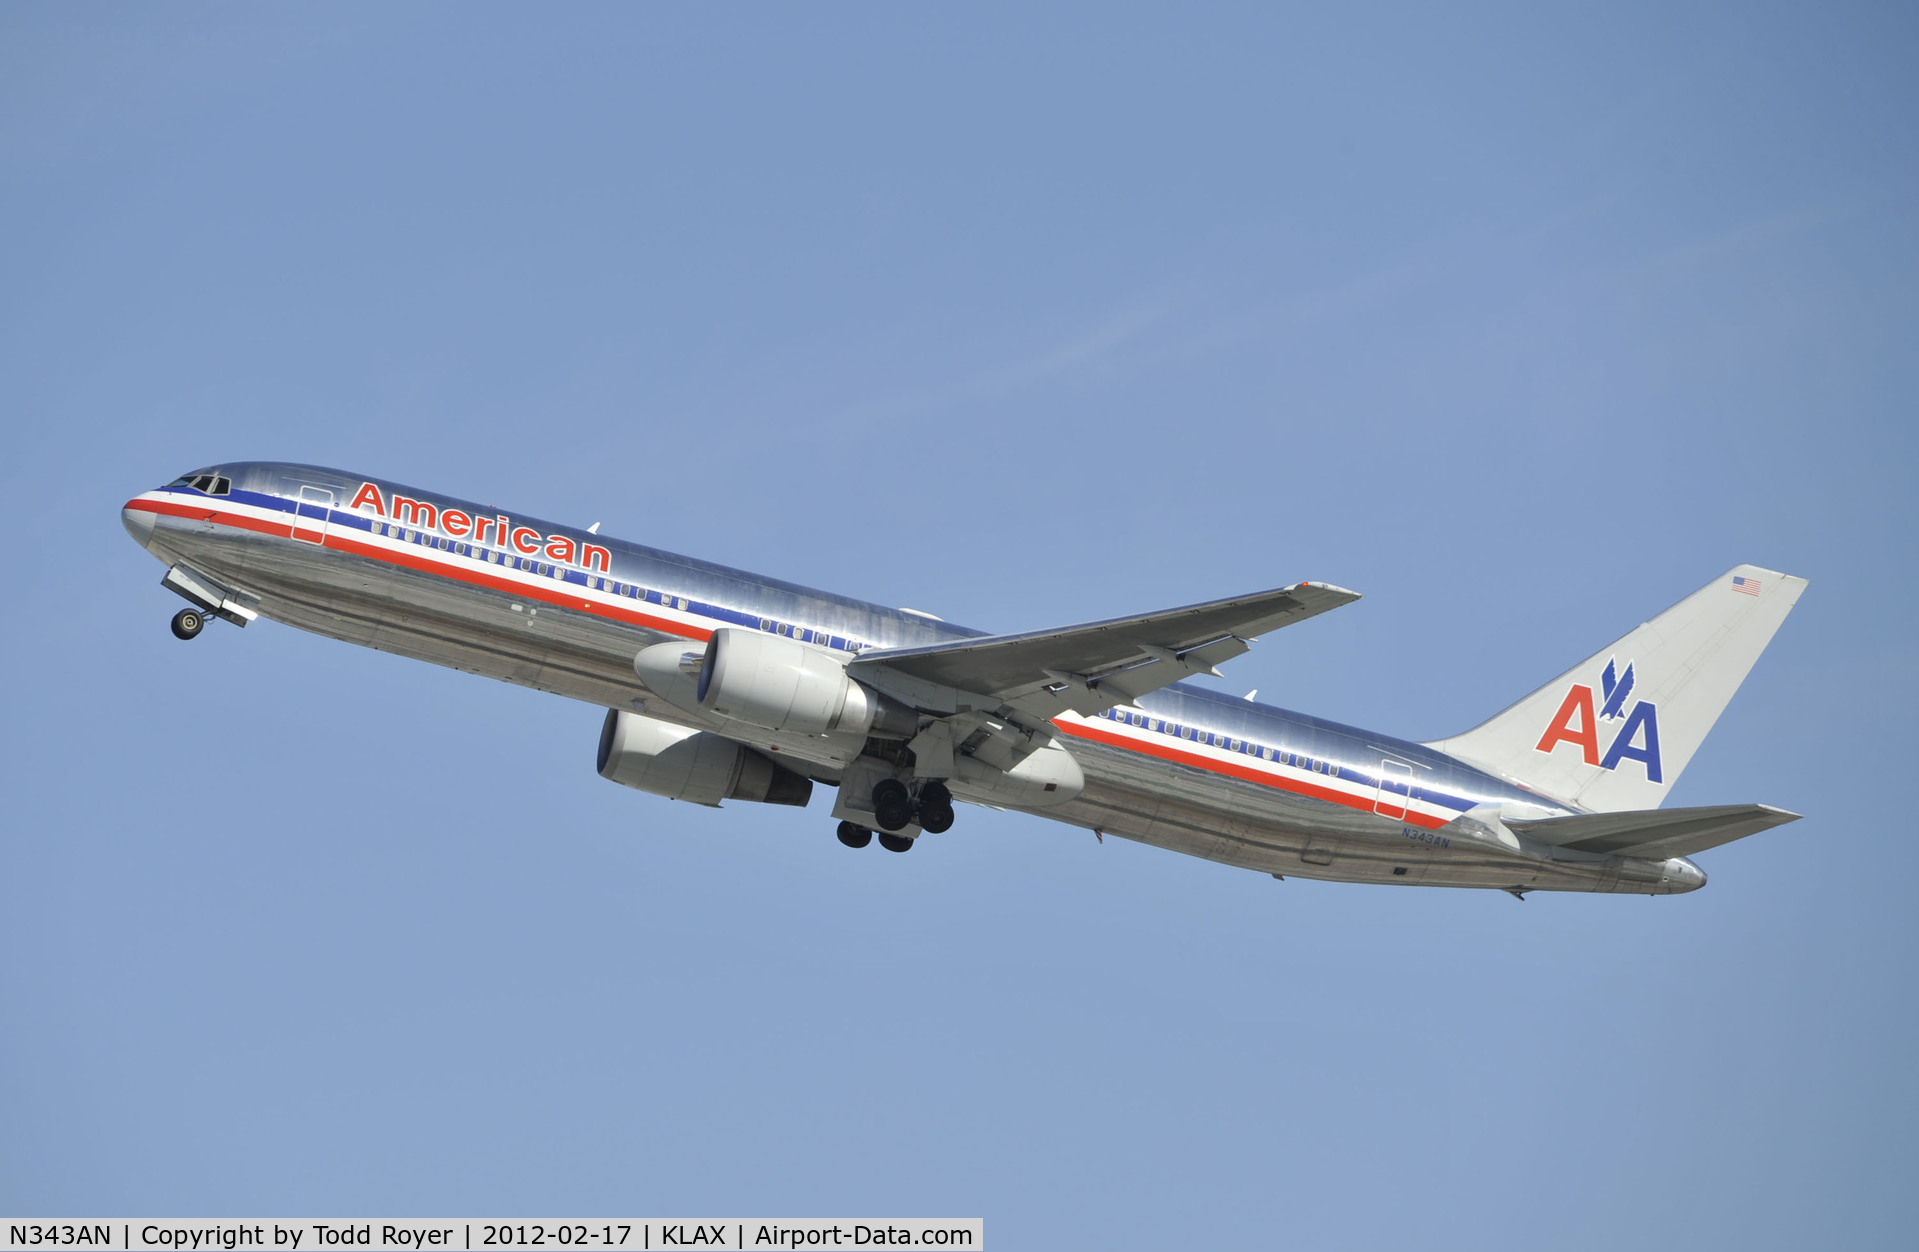 N343AN, 2003 Boeing 767-323 C/N 33082, Departing LAX on 25R